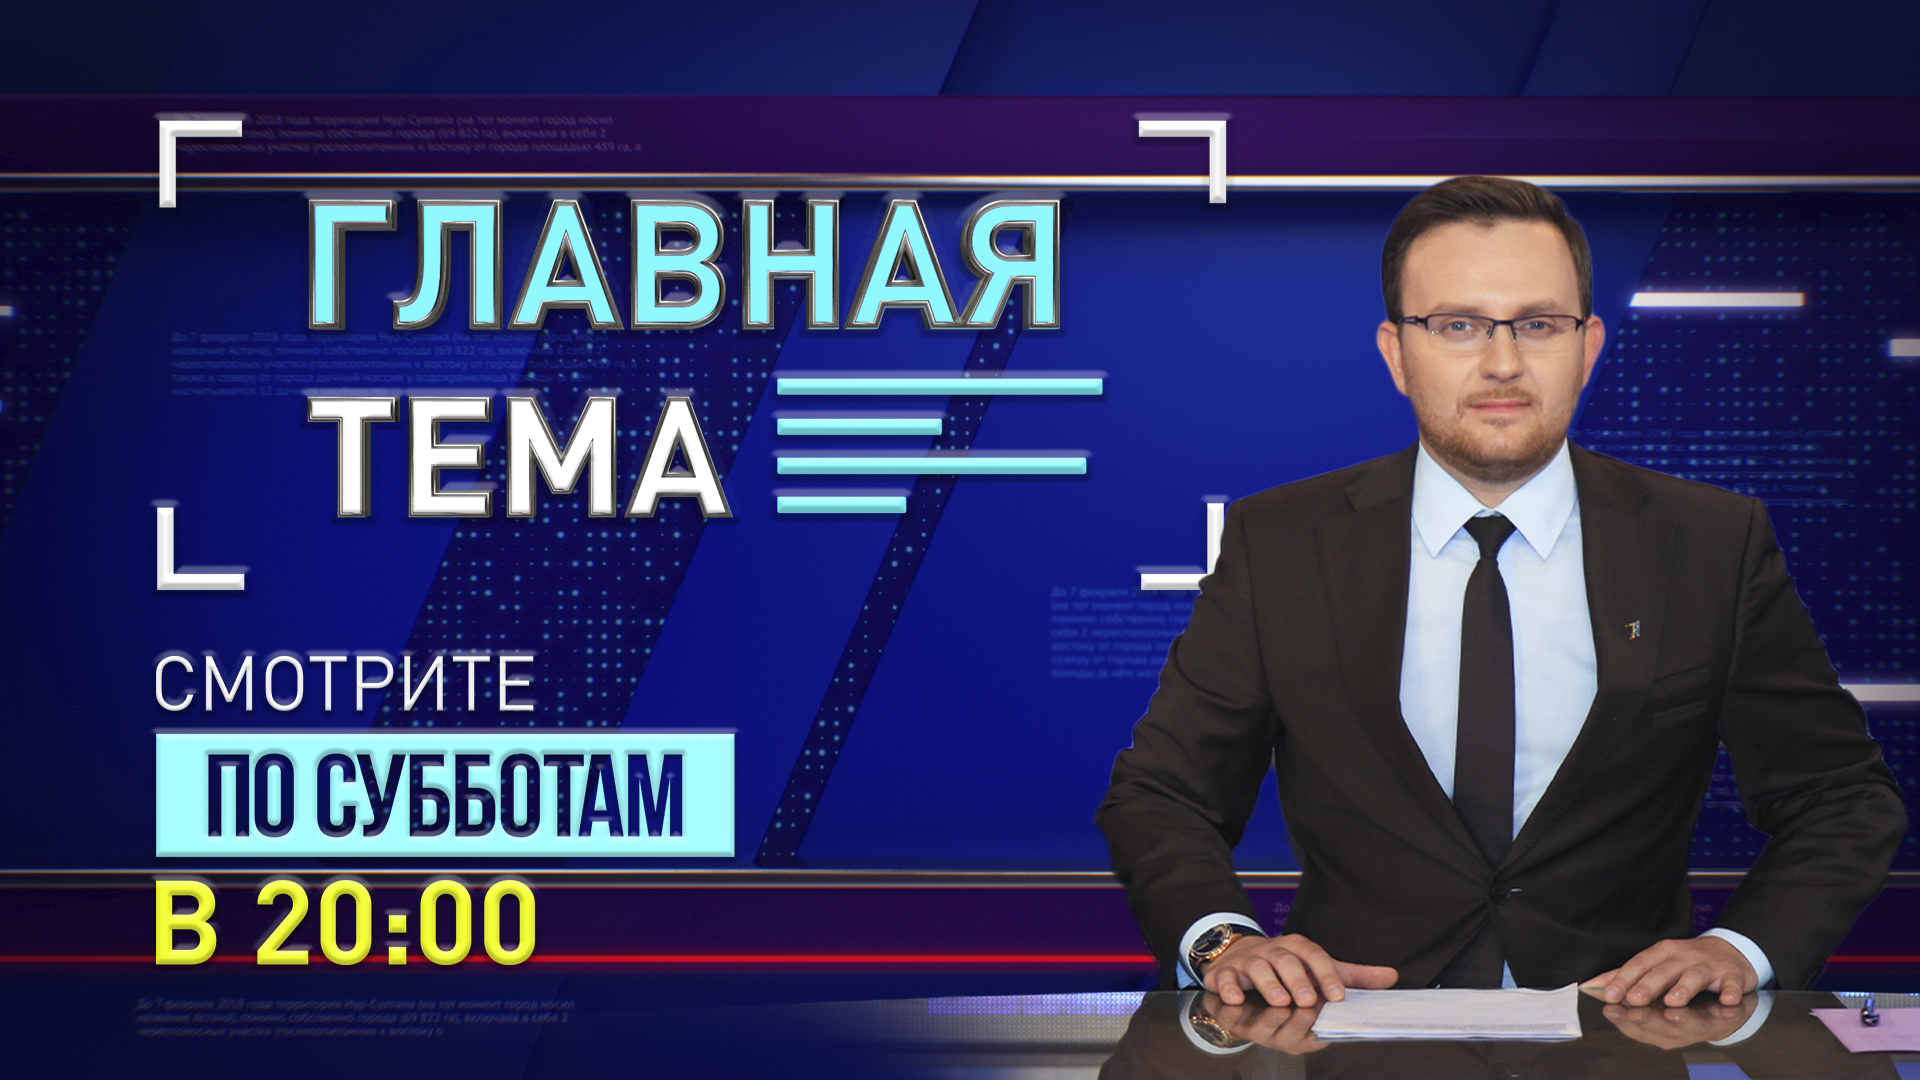 Евразия телеканал прямой. Первый канал Евразия. Первый канал Евразия логотип. Первый канал Казахстан. Евразия первый канал прямой.